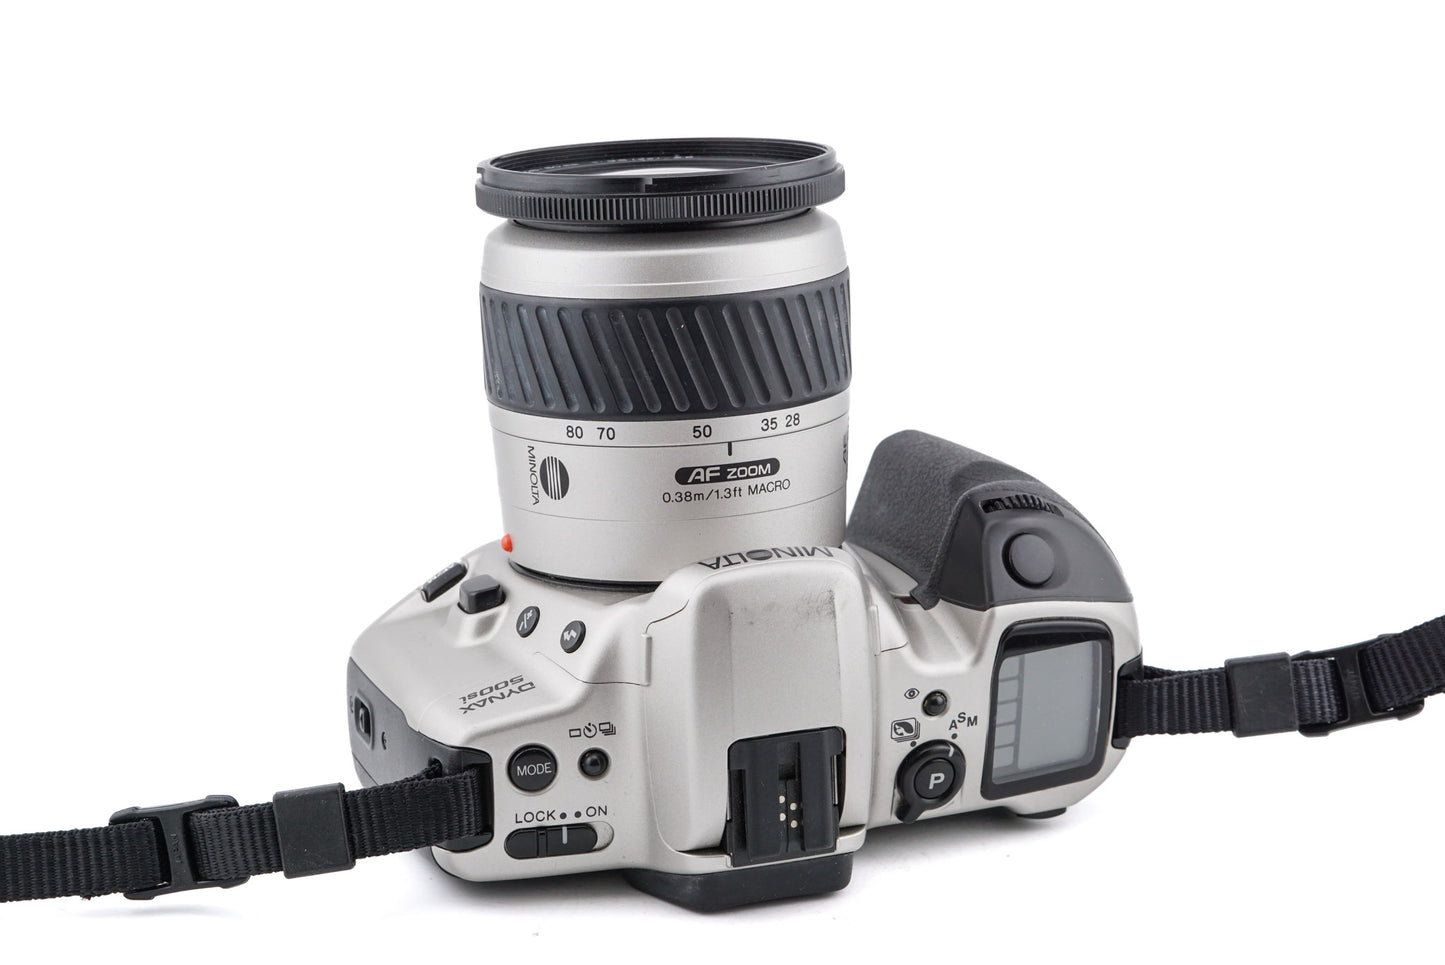 Minolta Dynax 500si + 28-80mm f3.5-5.6 AF Zoom Macro